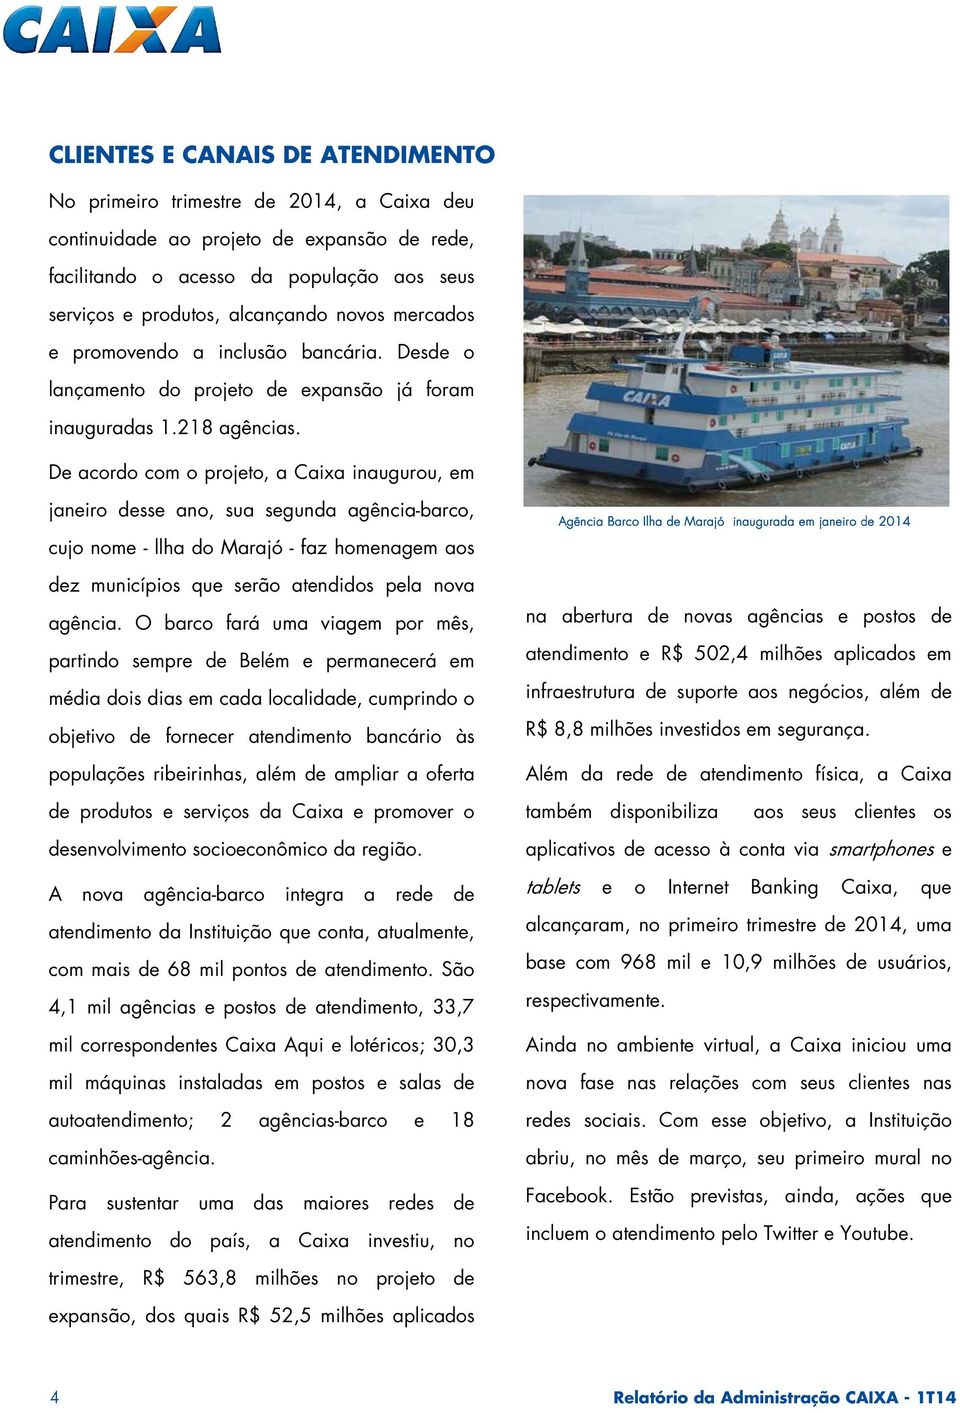 De acordo com o projeto, a Caixa inaugurou, em janeiro desse ano, sua segunda agência-barco, cujo nome - llha do Marajó - faz homenagem aos dez municípios que serão atendidos pela nova agência.